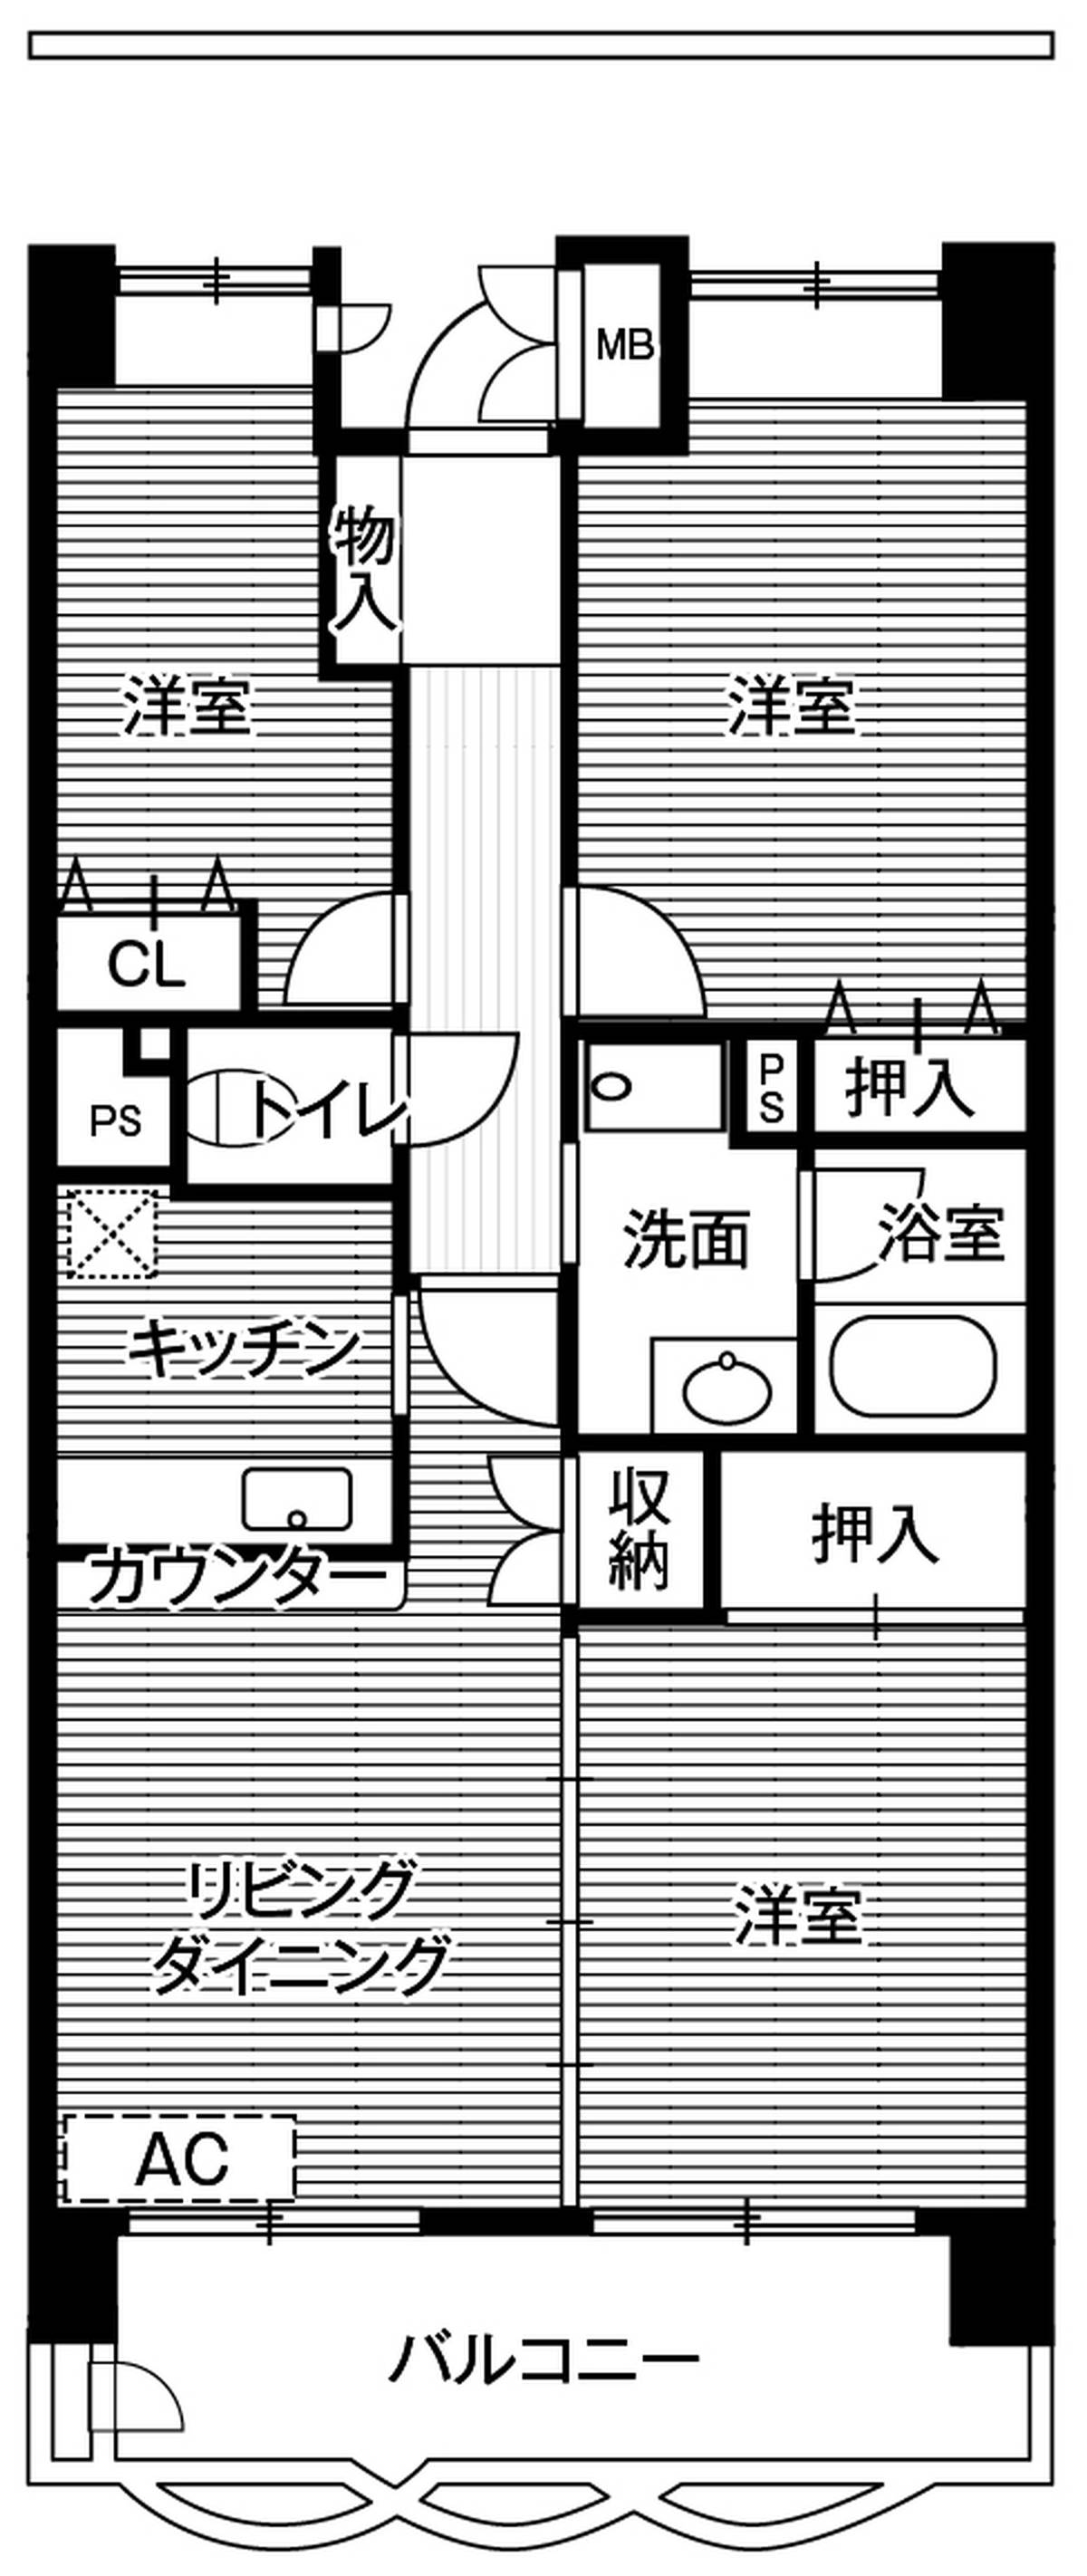 3LDK floorplan of Village House Shiomi Tower in Koto-ku